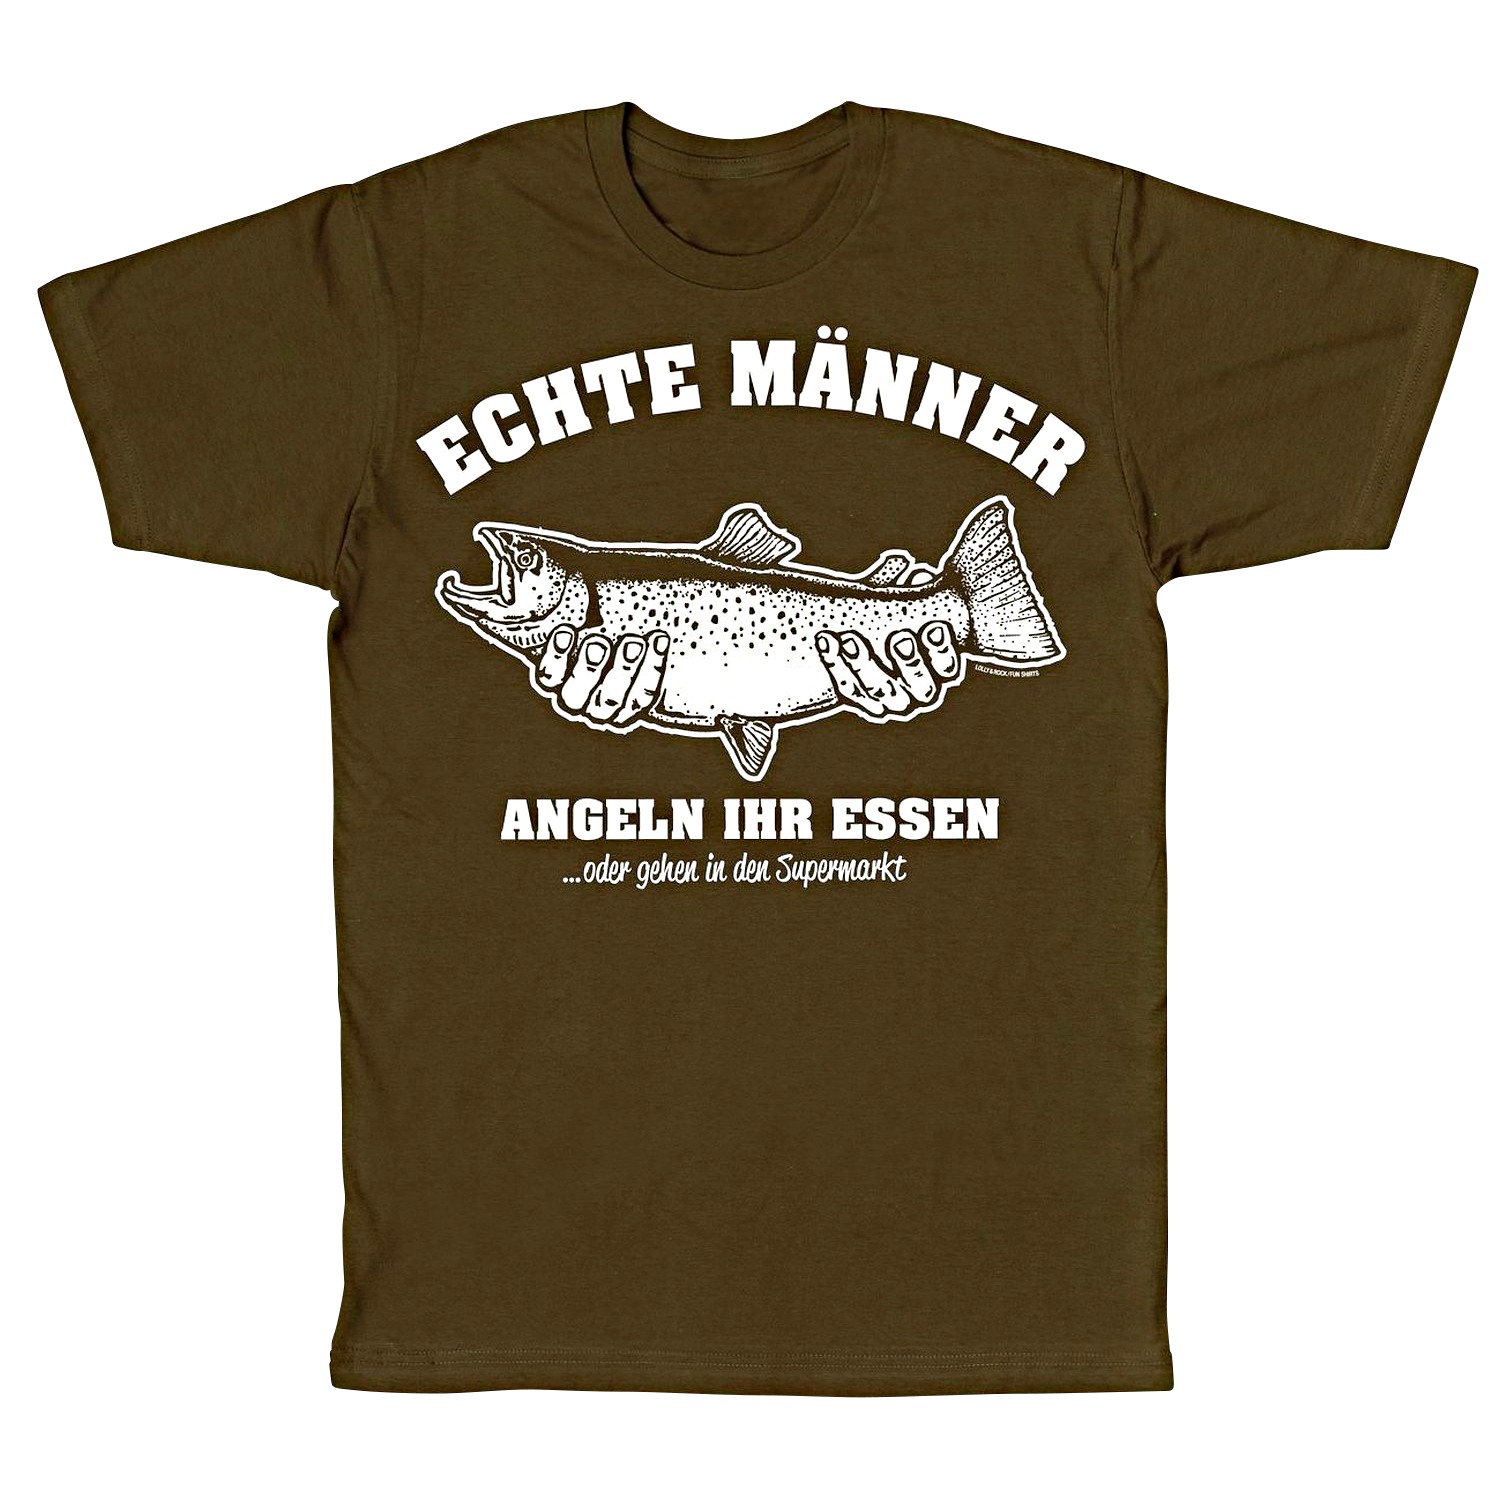 Unisex T-Shirt "Echte Männer" 